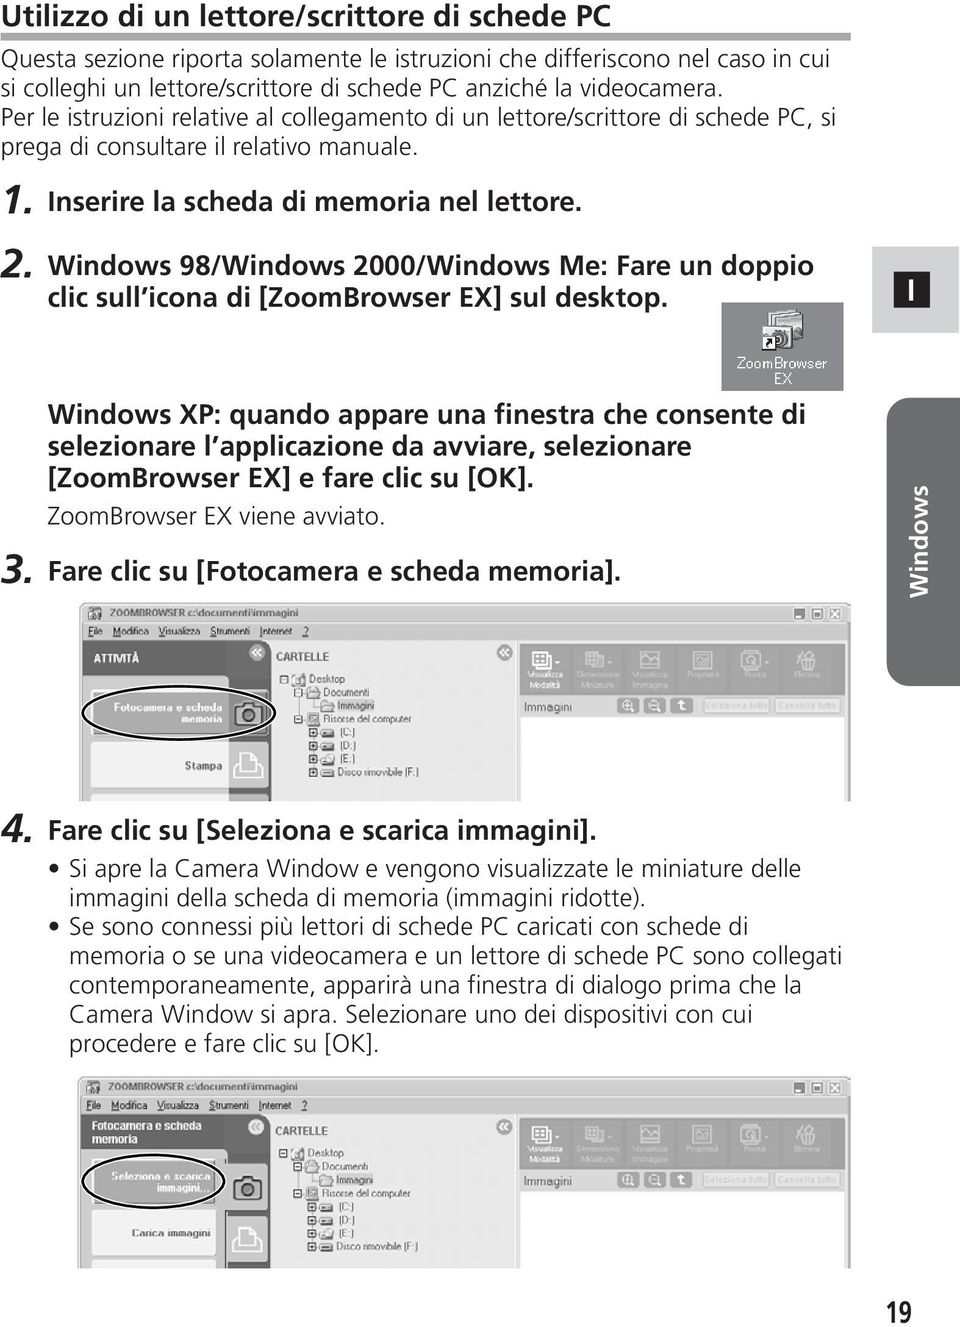 Windows 98/Windows 2000/Windows Me: Fare un doppio clic sull icona di [ZoomBrowser EX] sul desktop.